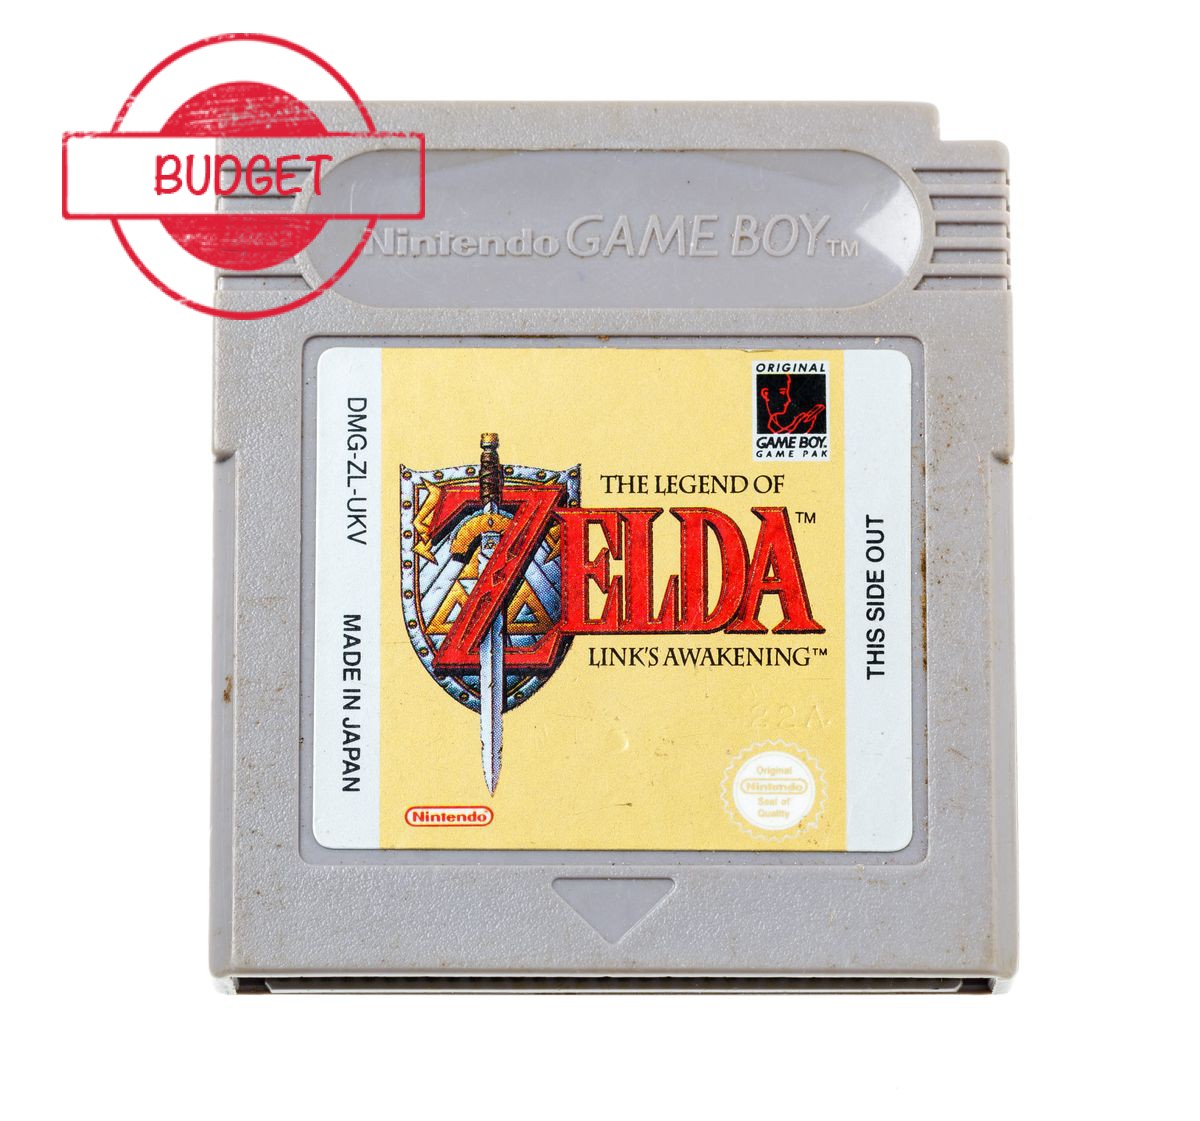 The Legend of Zelda Link's Awakening - Budget - Gameboy Classic Games